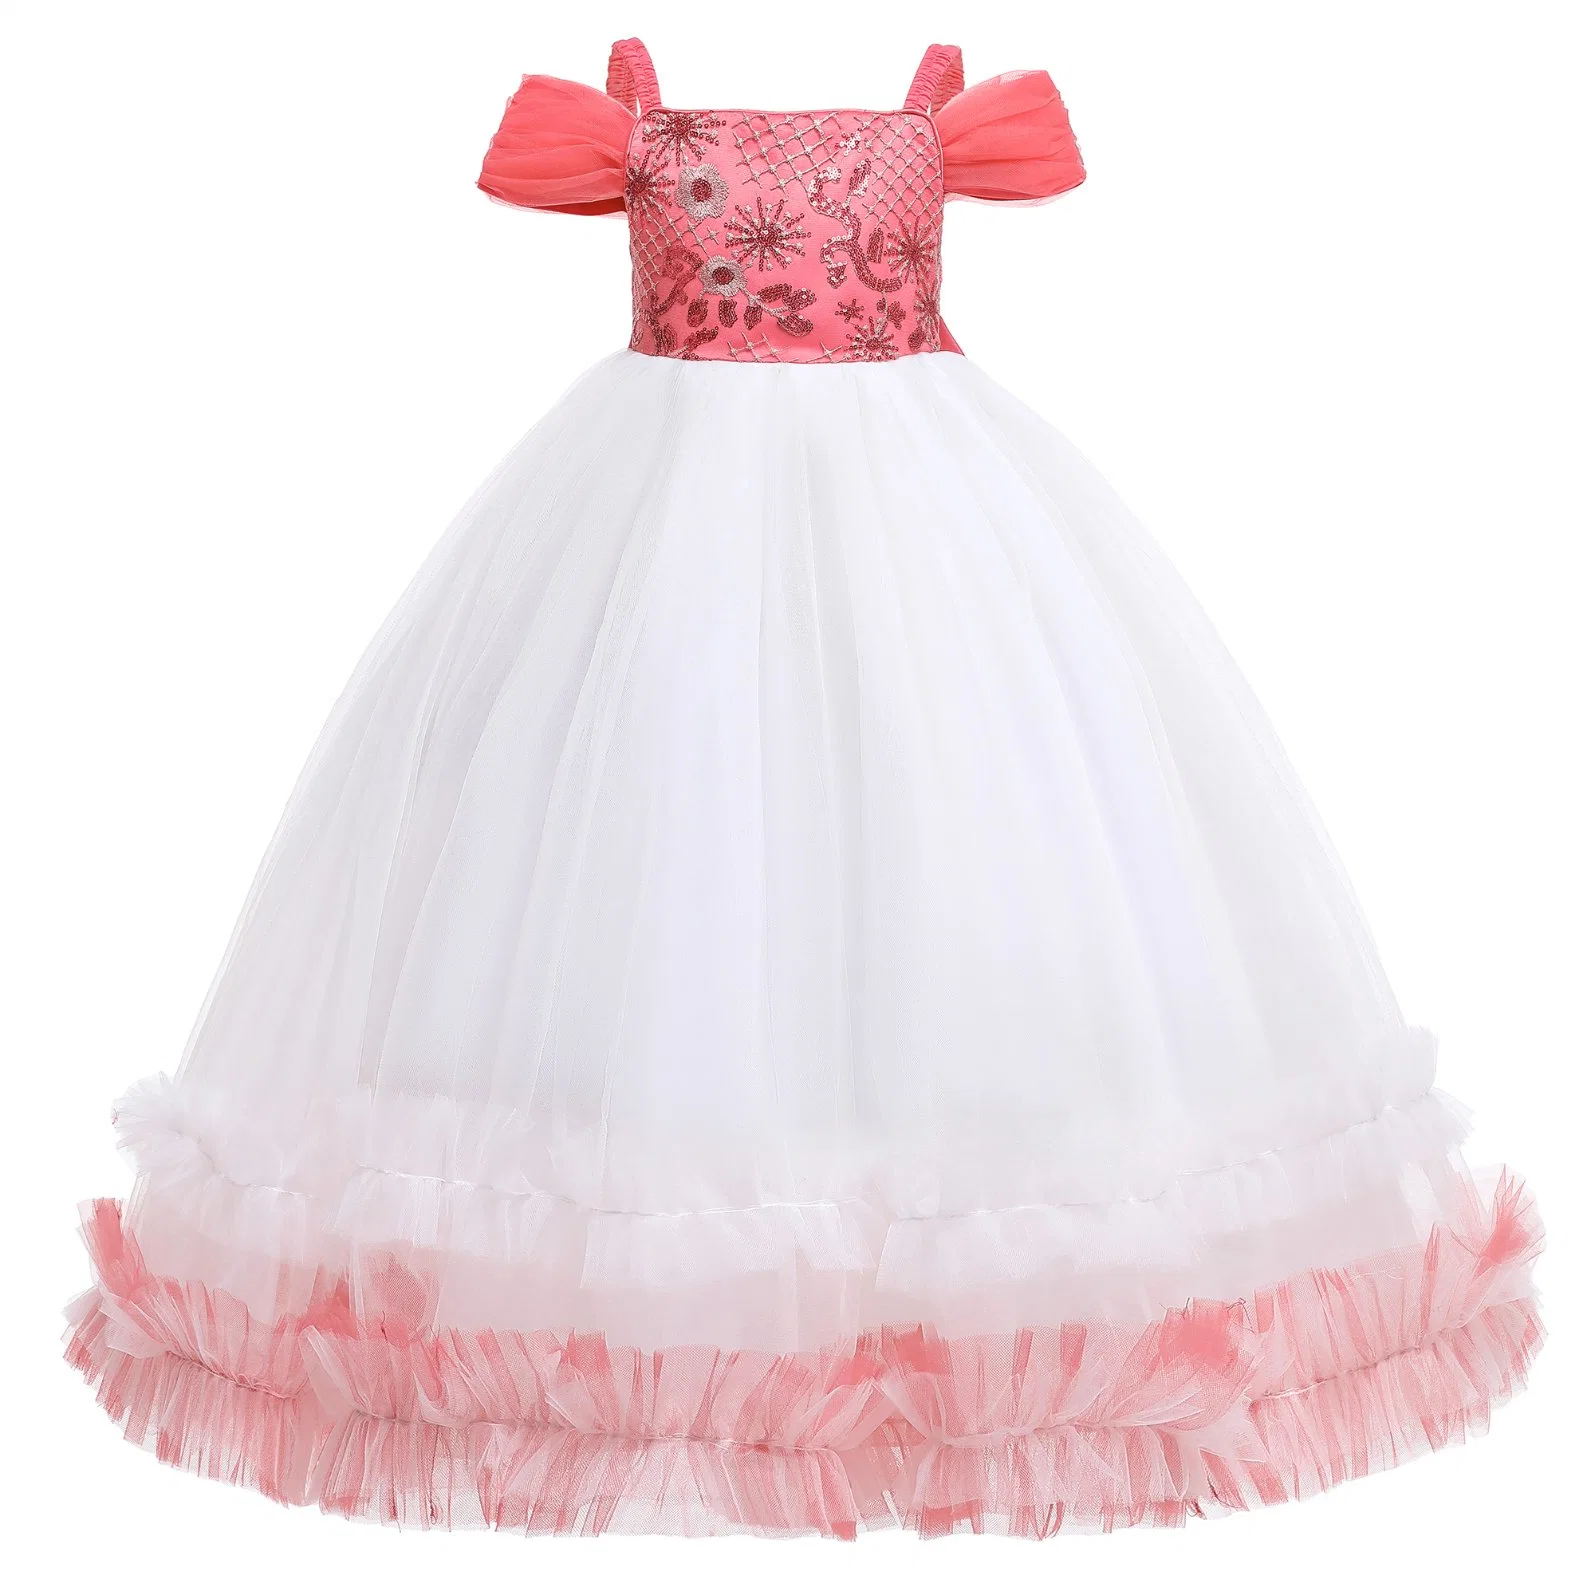 Children Apparel Baby Wear Girls Party Garment Wedding Dress Ball Gown Princess Frock Sweet Long Dress Sleeveless